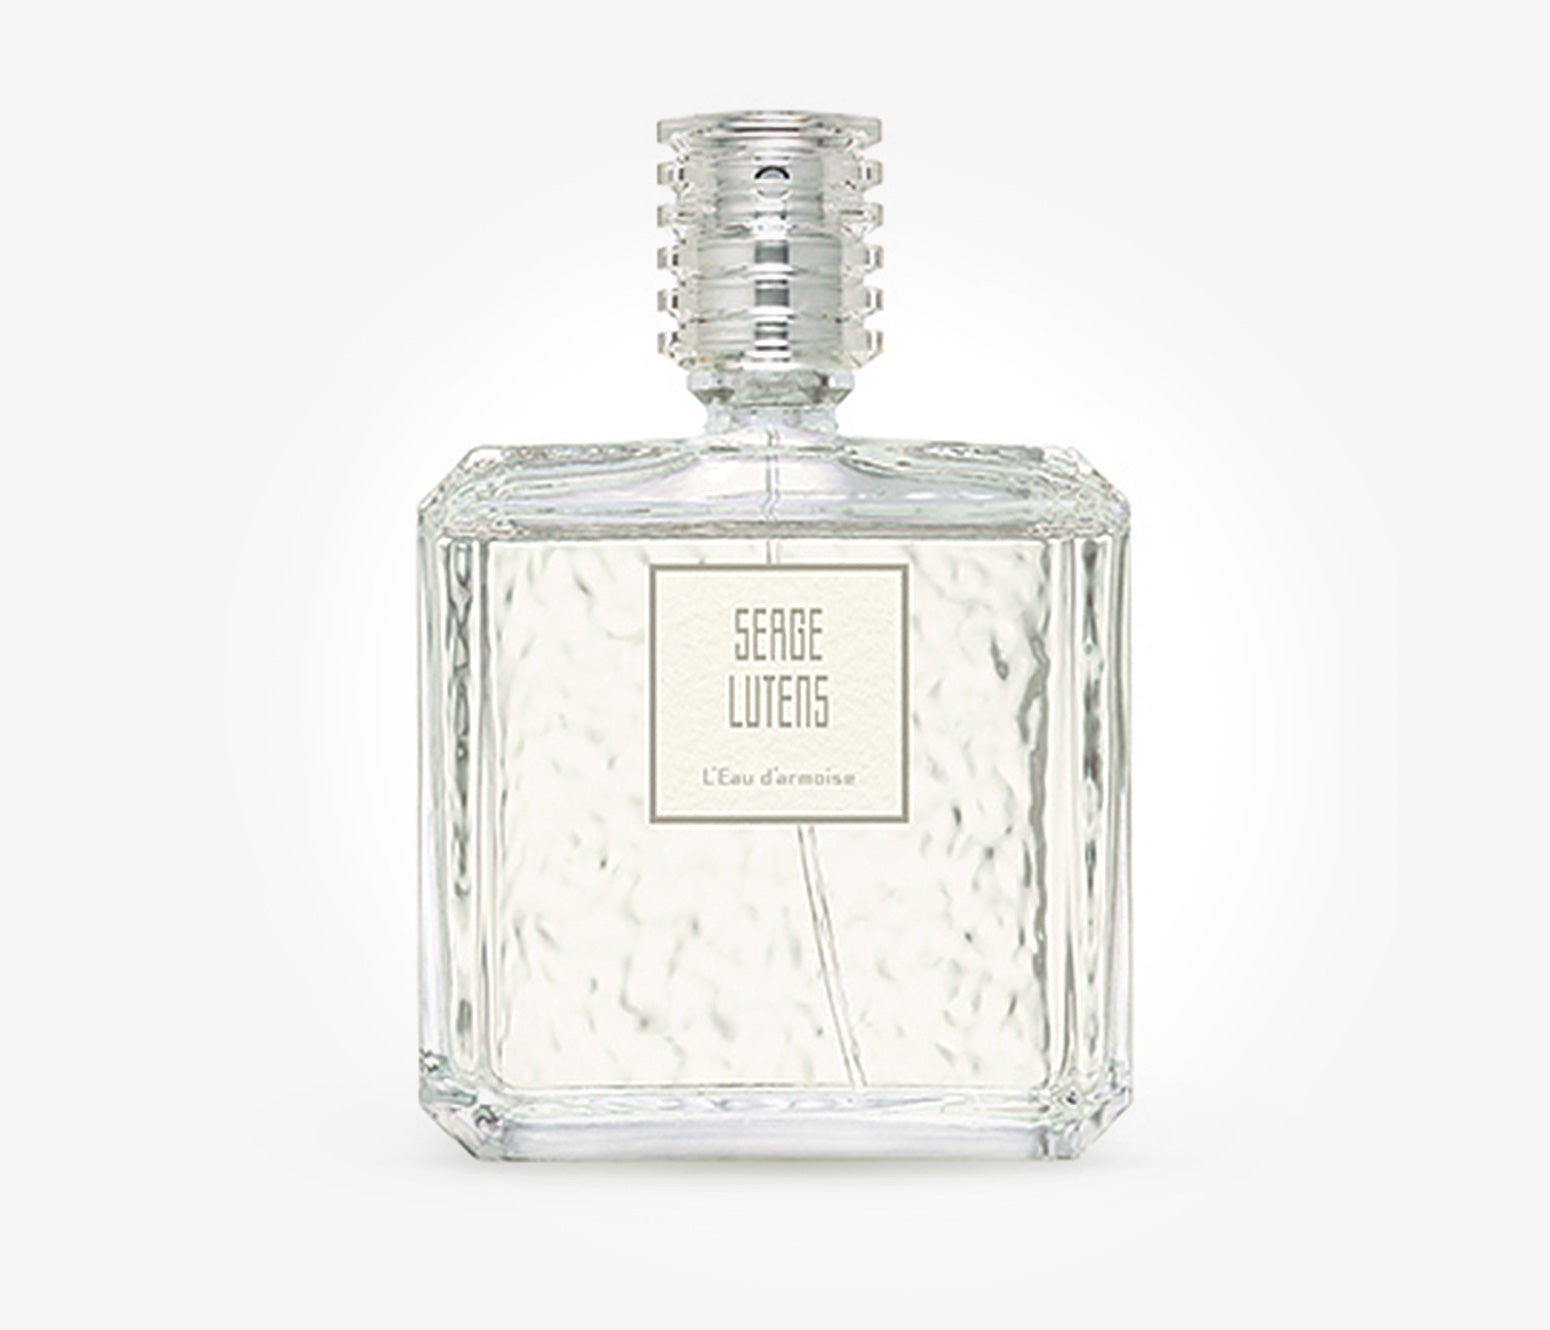 Serge Lutens - L'Eau d'Armoise - 100ml - PRY7639 - product image - Fragrance - Les Senteurs